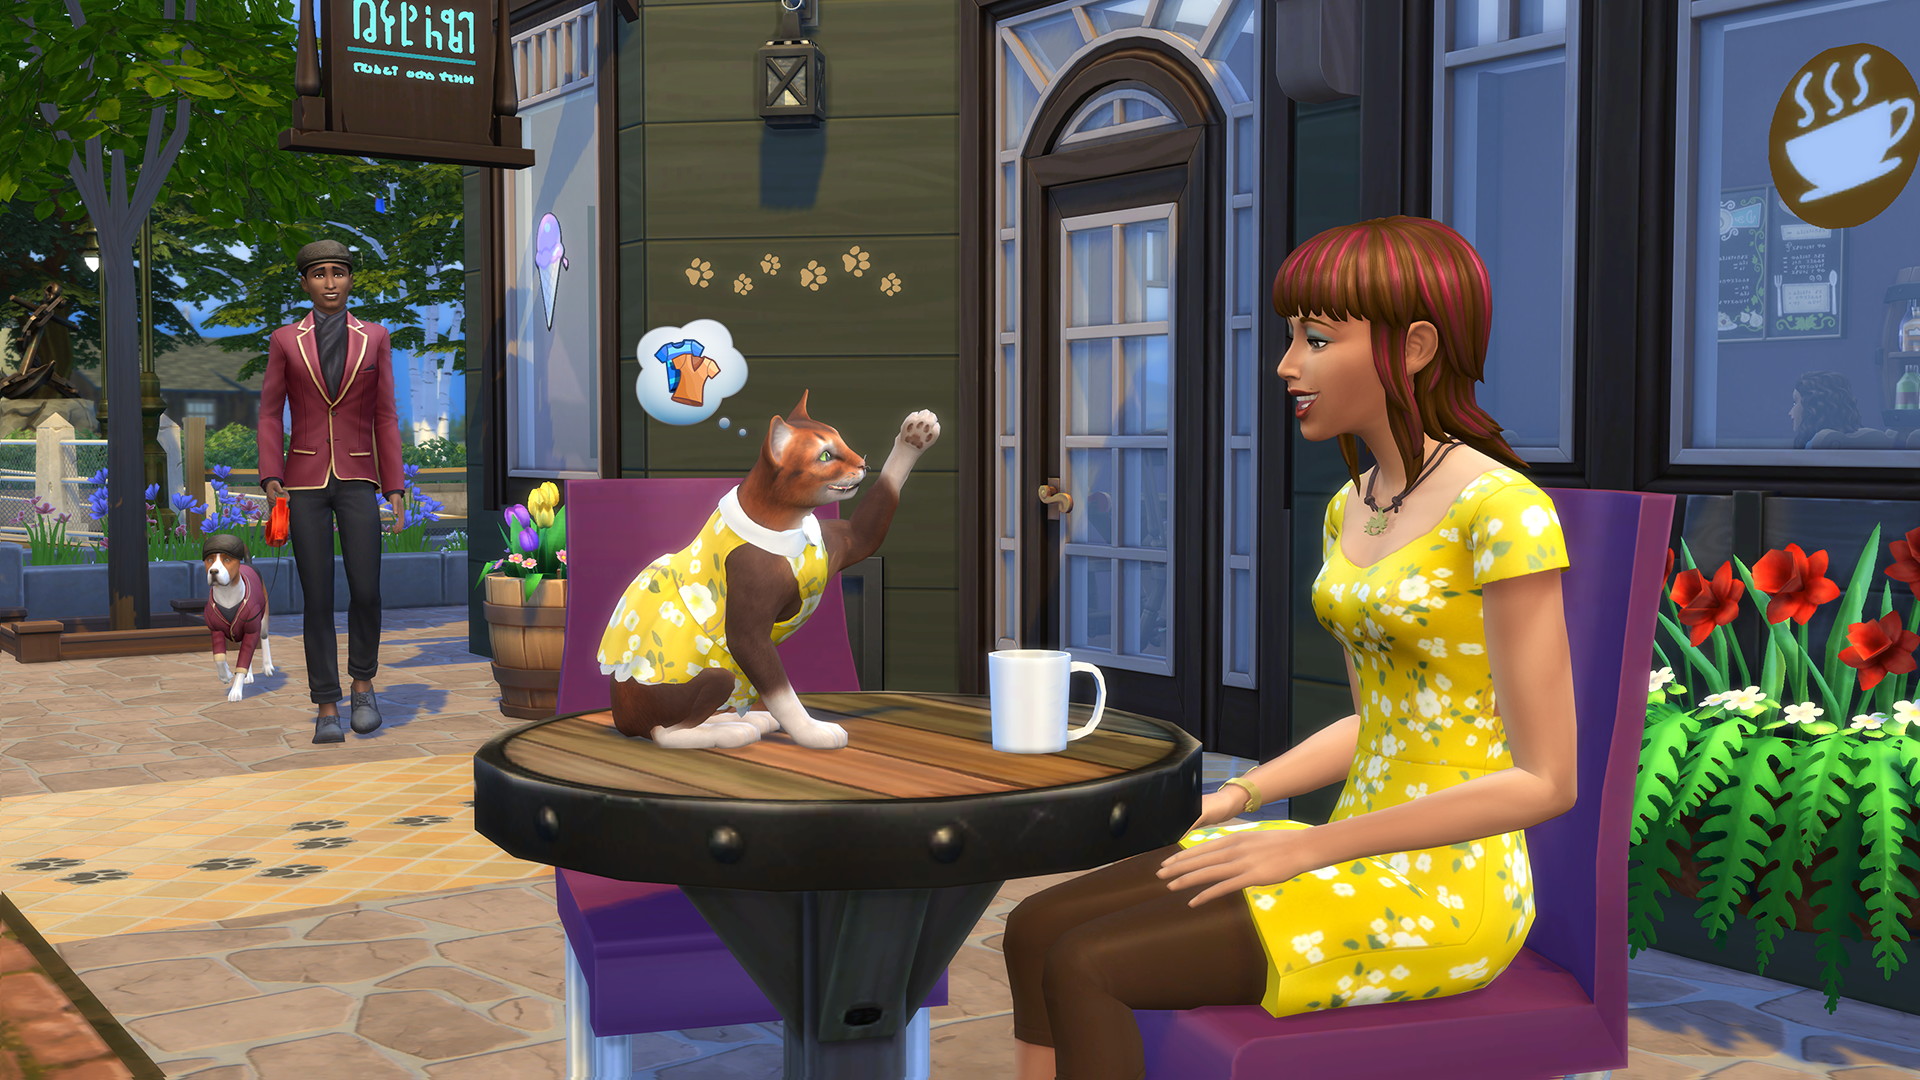 The Sims 4: My First Pet Stuff - screenshot 2